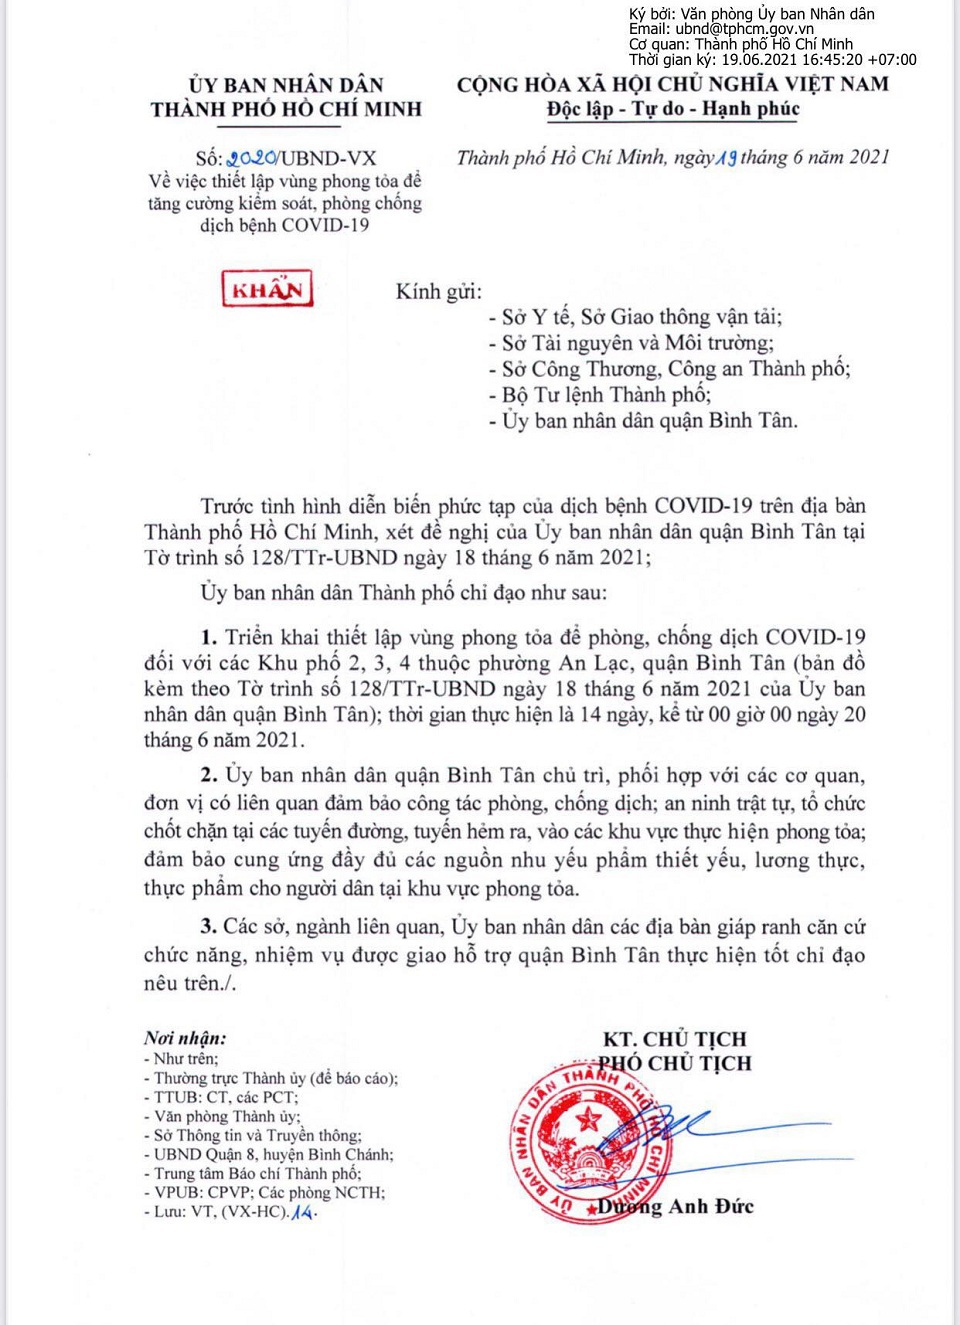 TP Hồ Chí Minh: Phong tỏa 3 khu phố ở quận Bình Tân trong 14 ngày - Ảnh 1